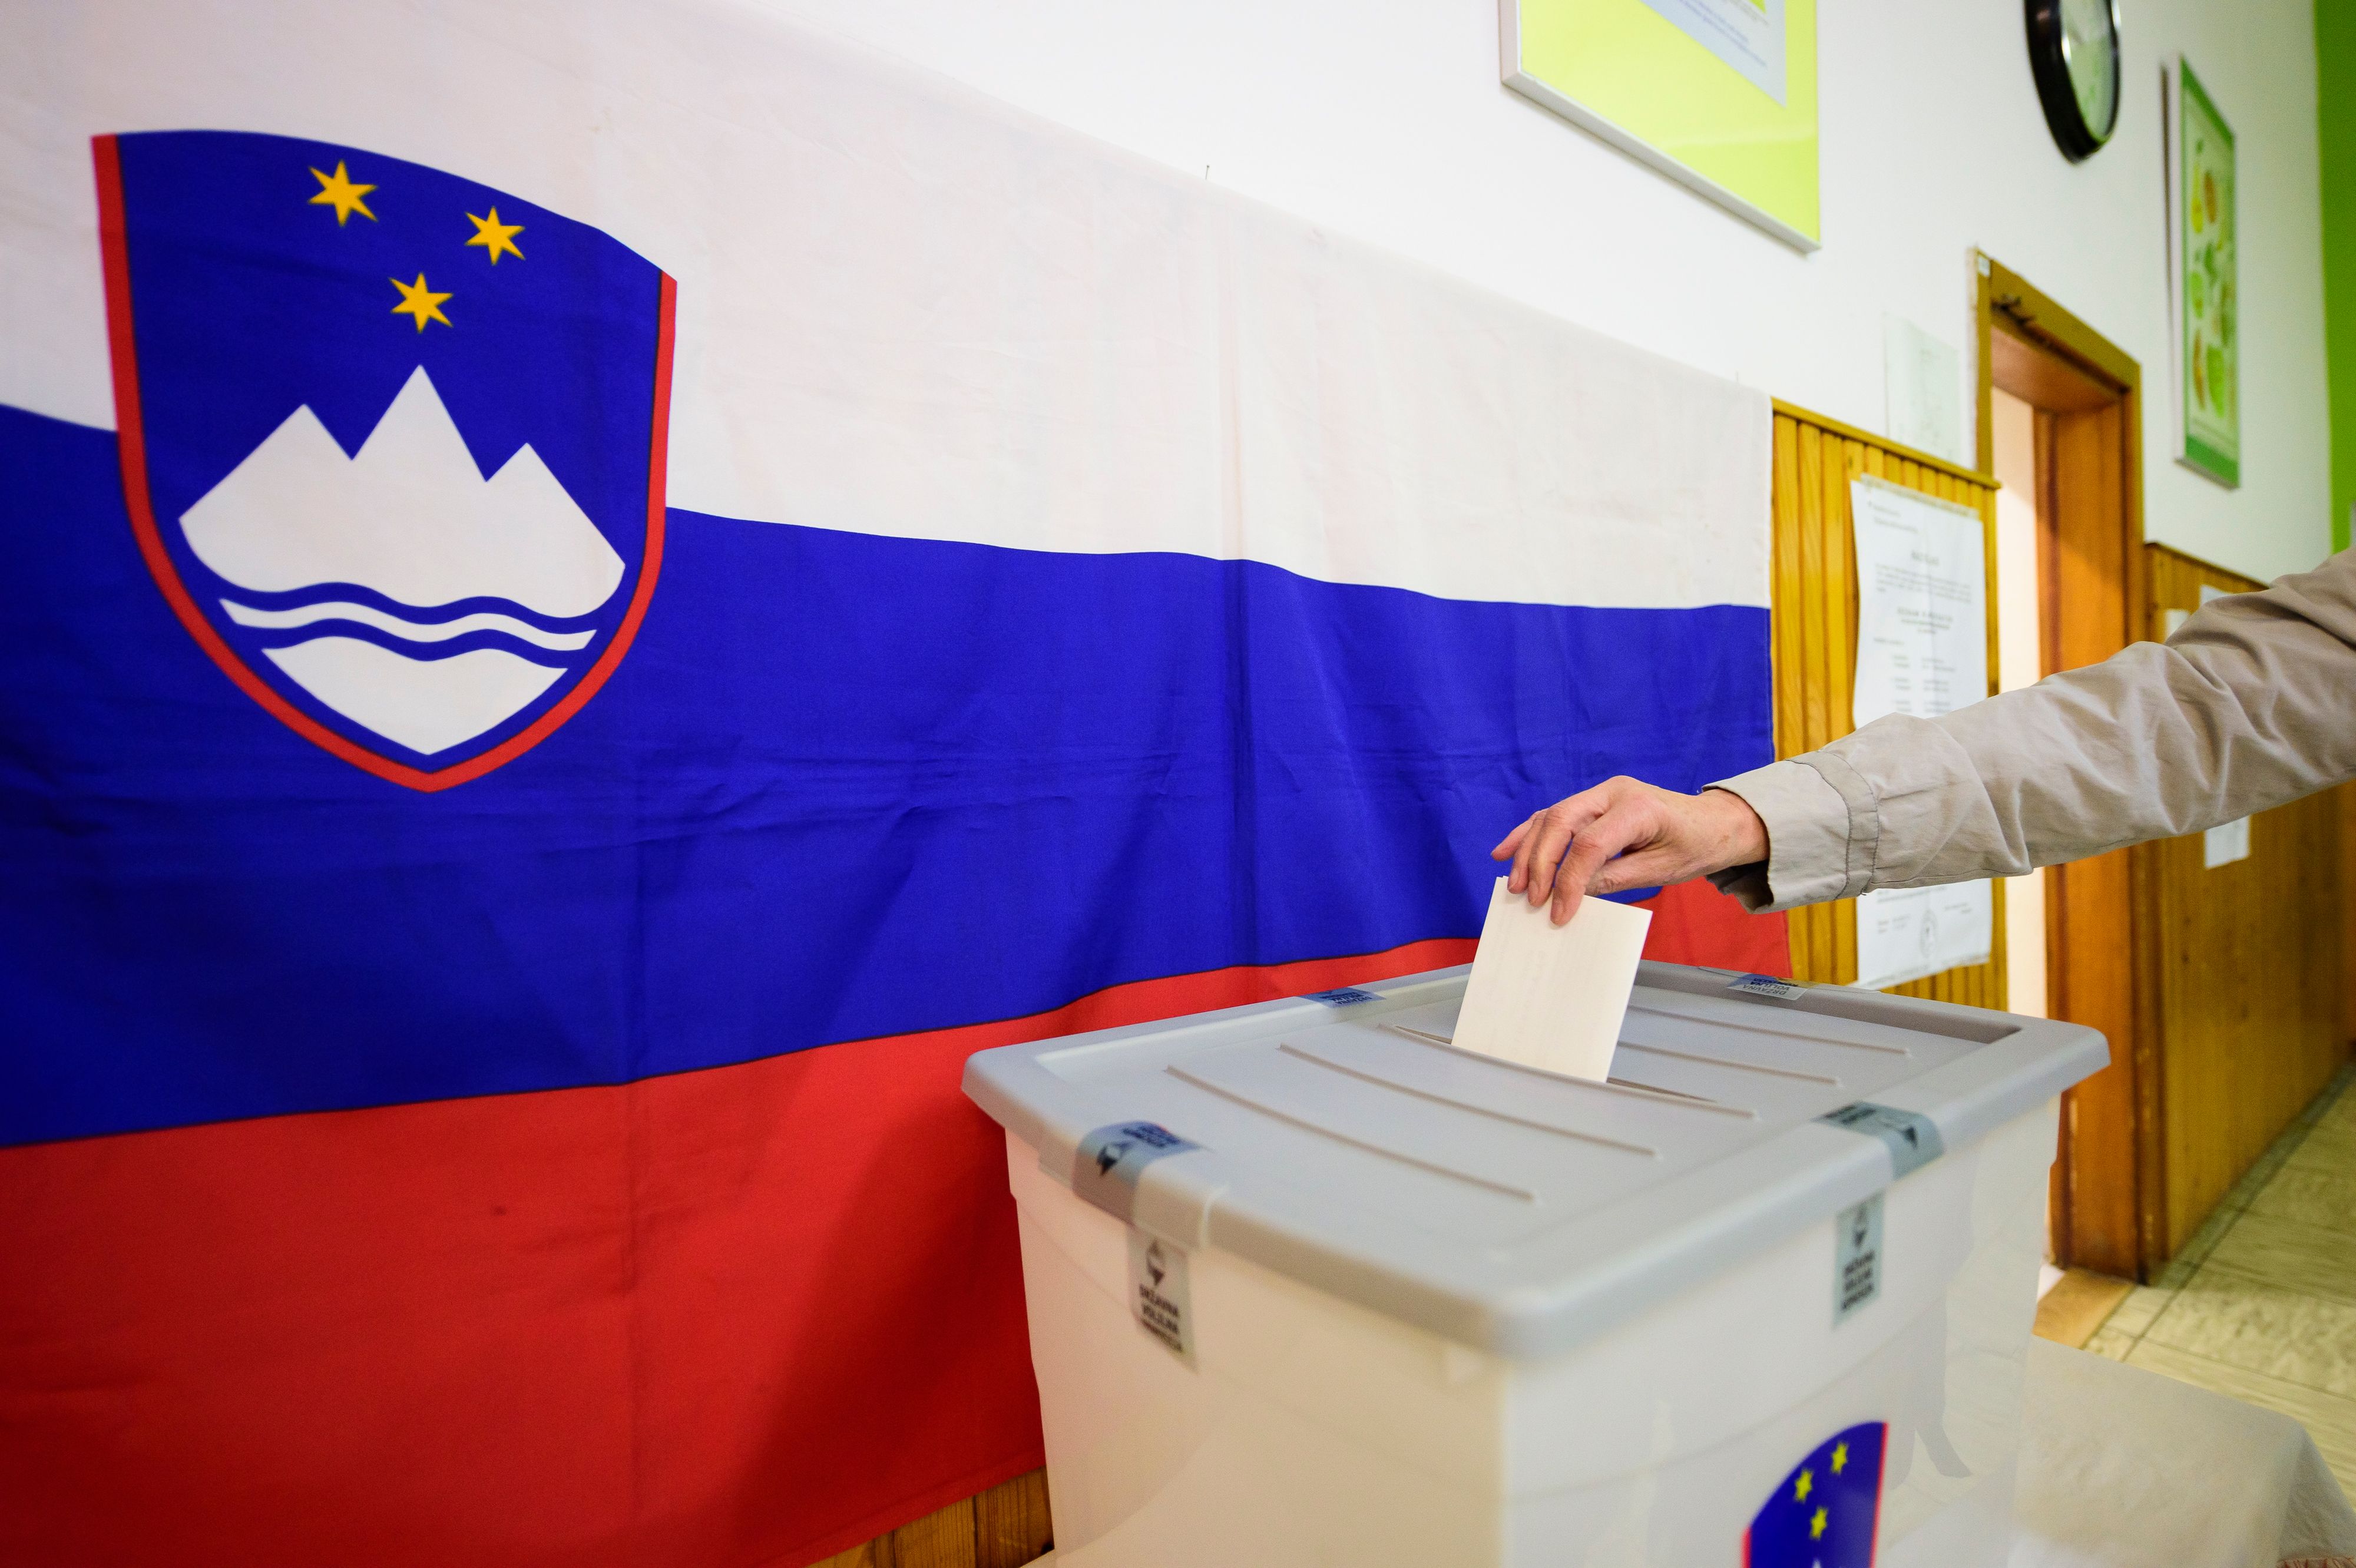 ناخب يضع ورقة الاقتراع داخل صندوق التصويت بسلوفينيا